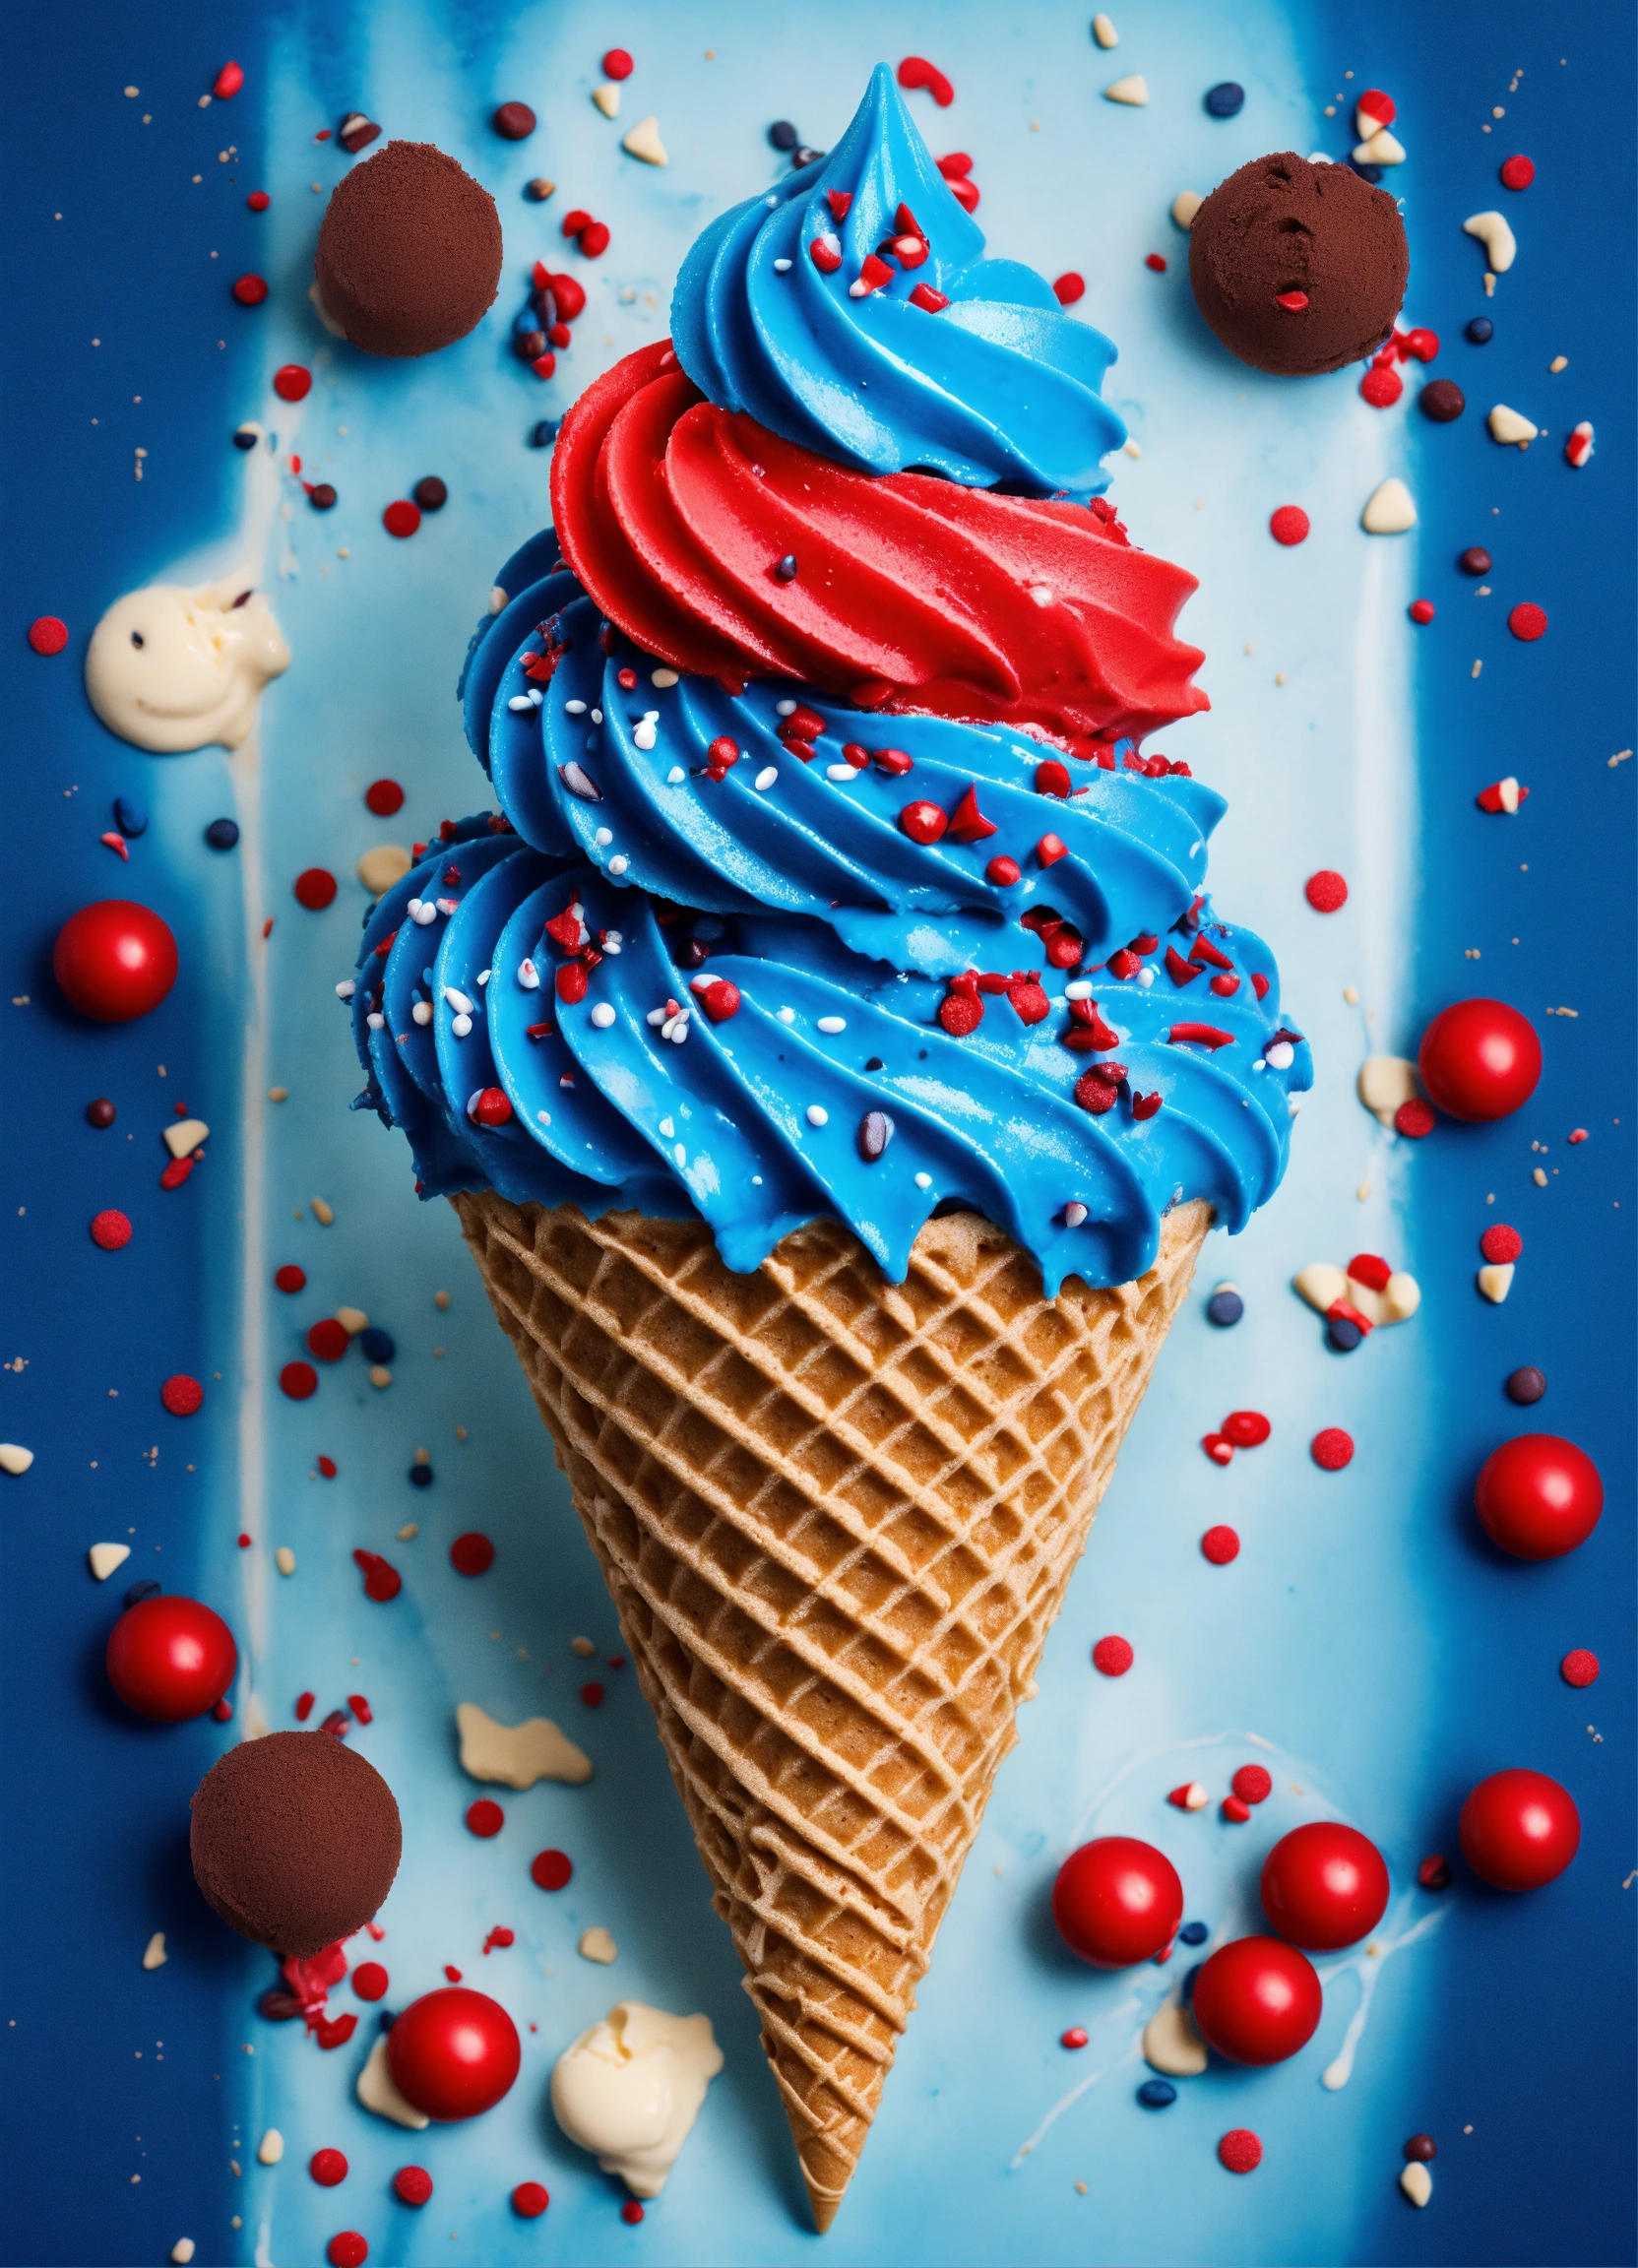 Lexica Realistic Icecream Cone With Dark Blue Icecream And Spiky Blue Icecream On Top With Red 